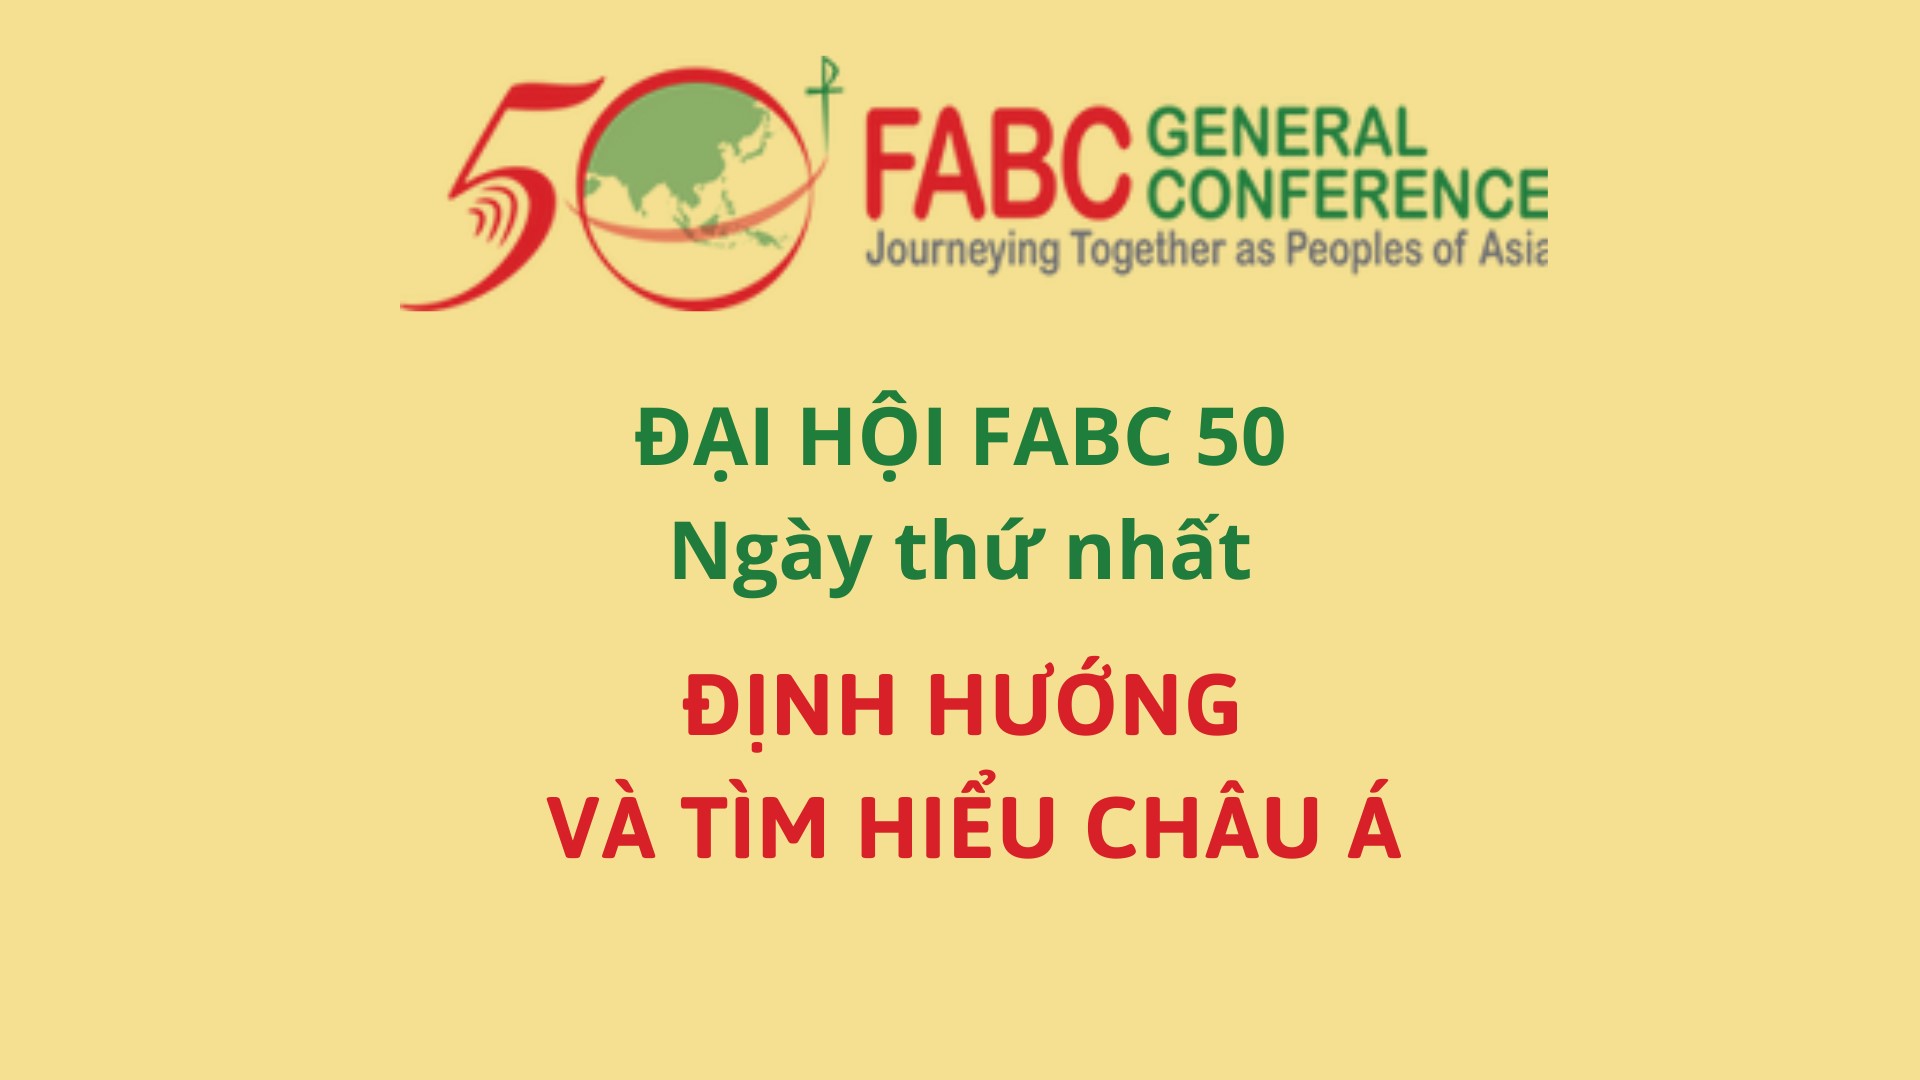 Đại hội FABC 50 ngày thứ nhất - Định hướng và tìm hiểu châu Á